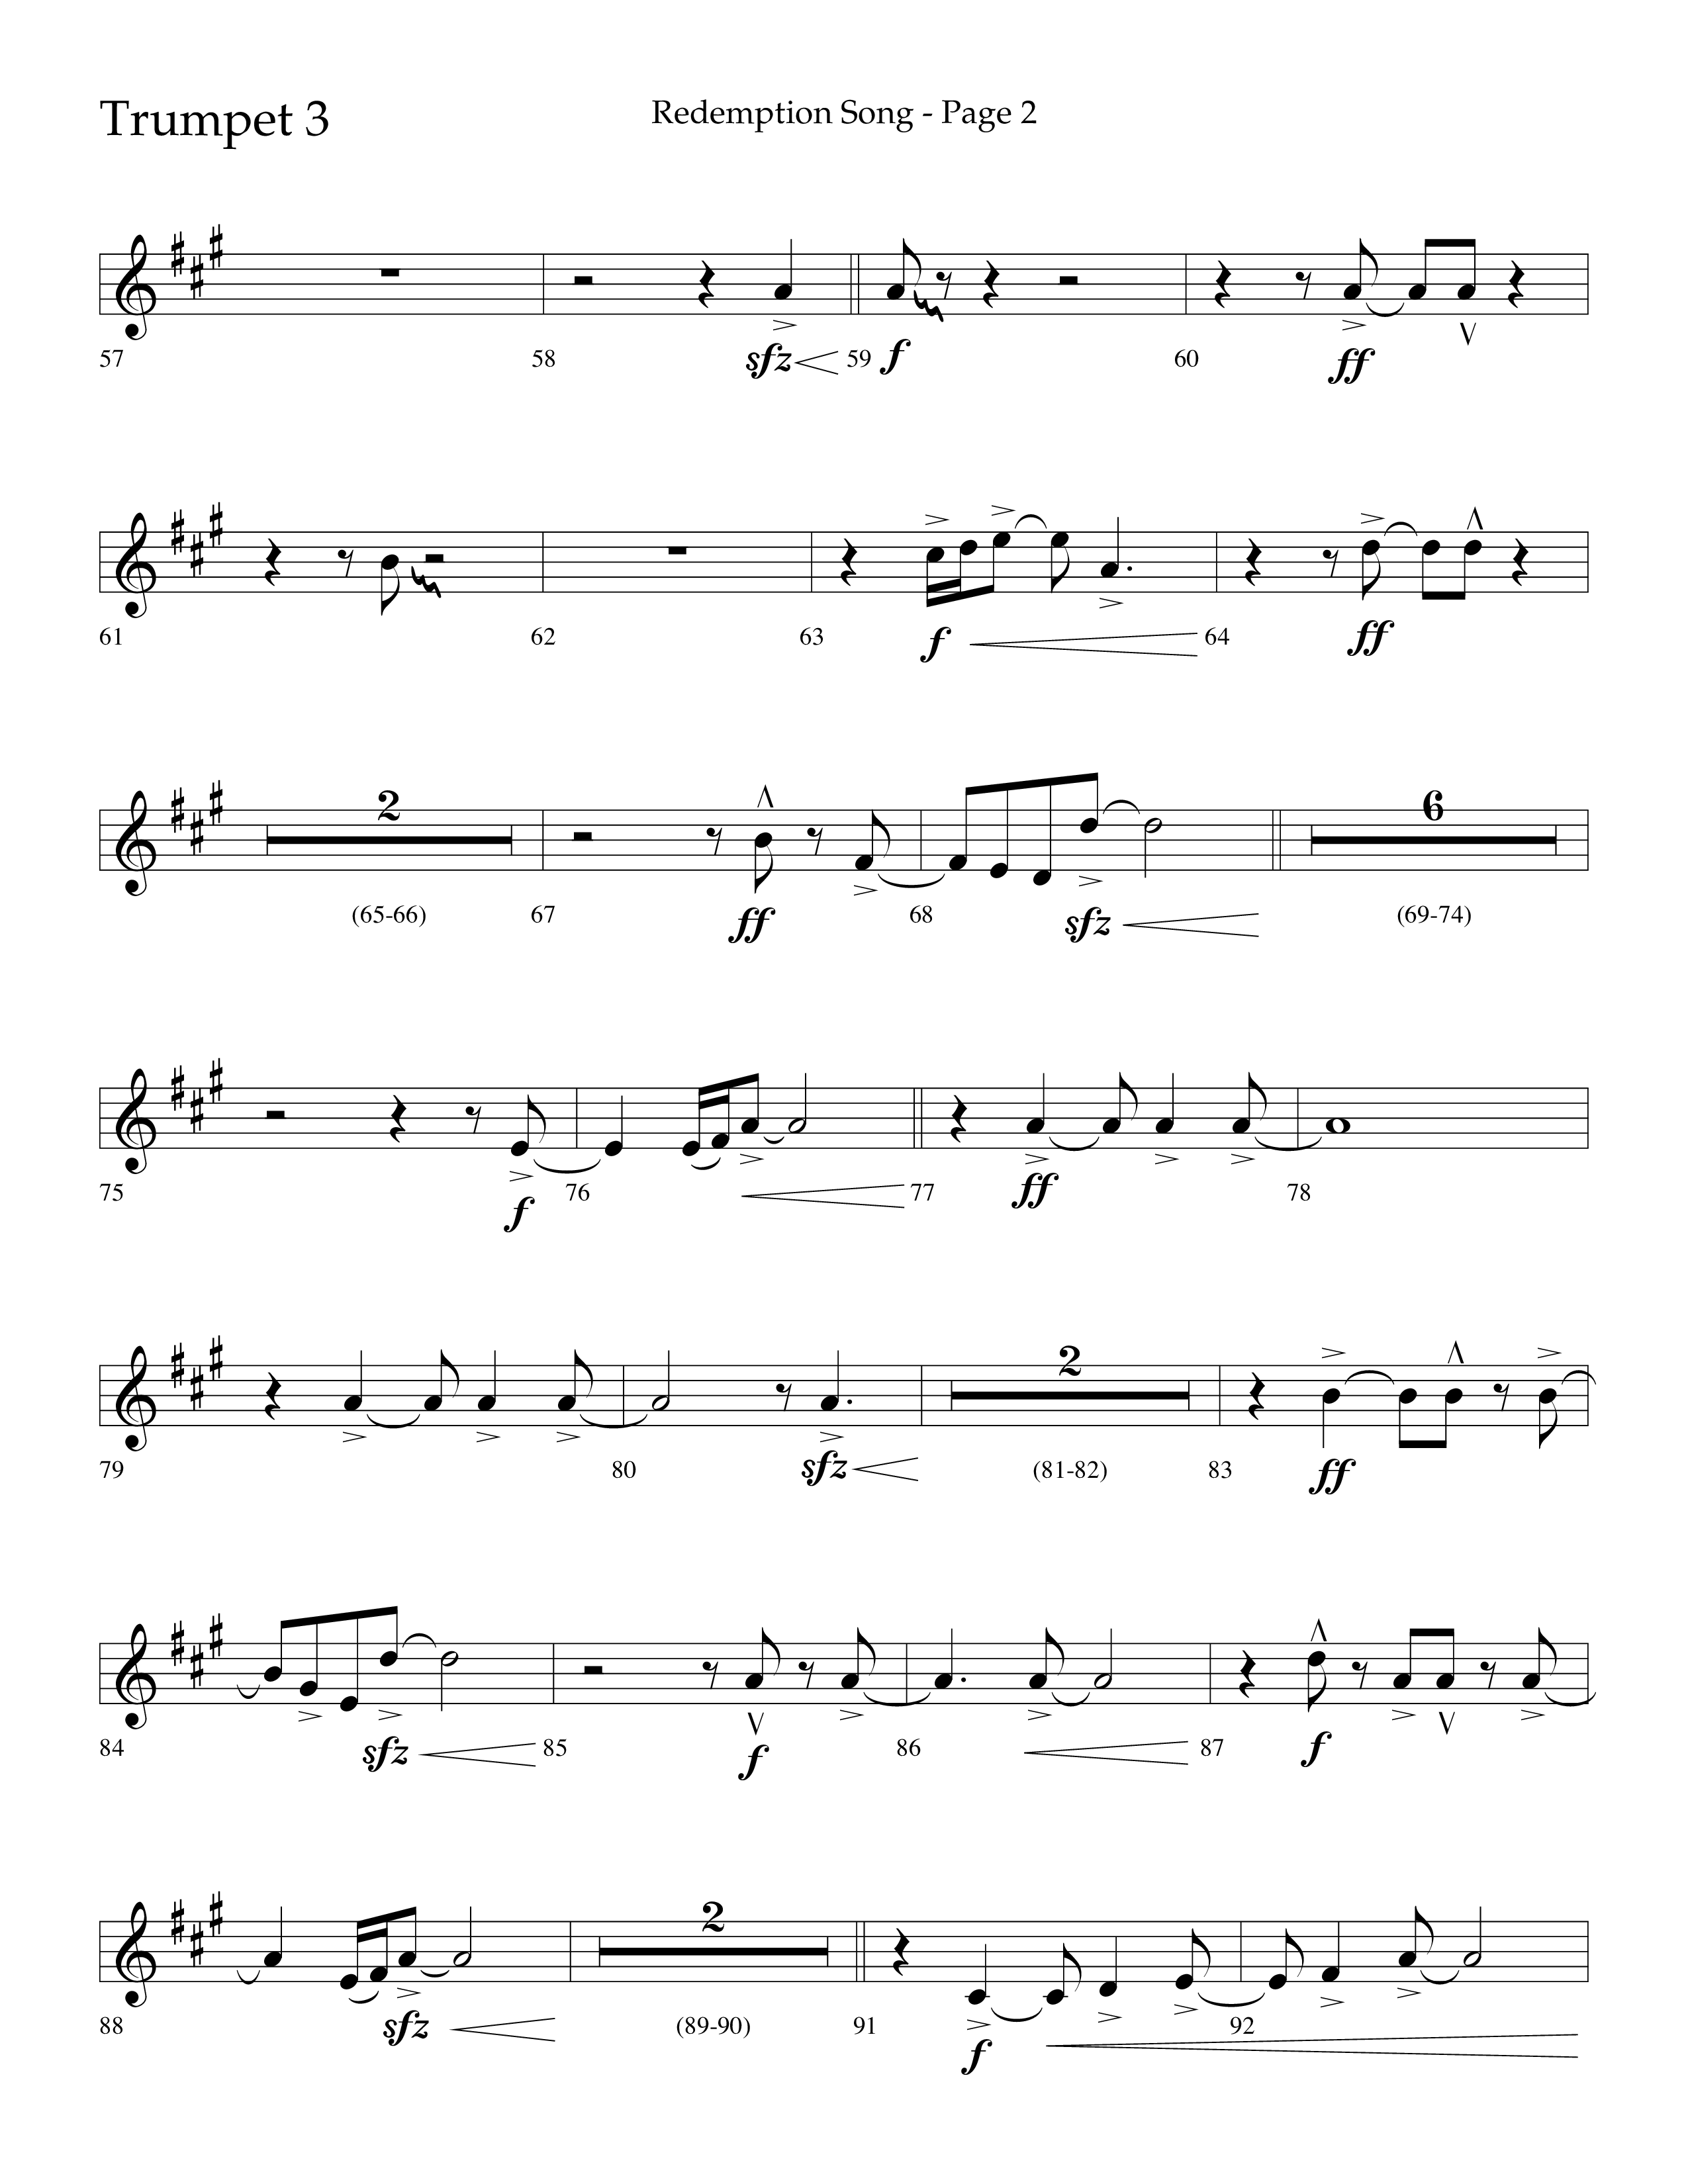 Redemption Song (Choral Anthem SATB) Trumpet 3 (Lifeway Choral / Arr. Cliff Duren)